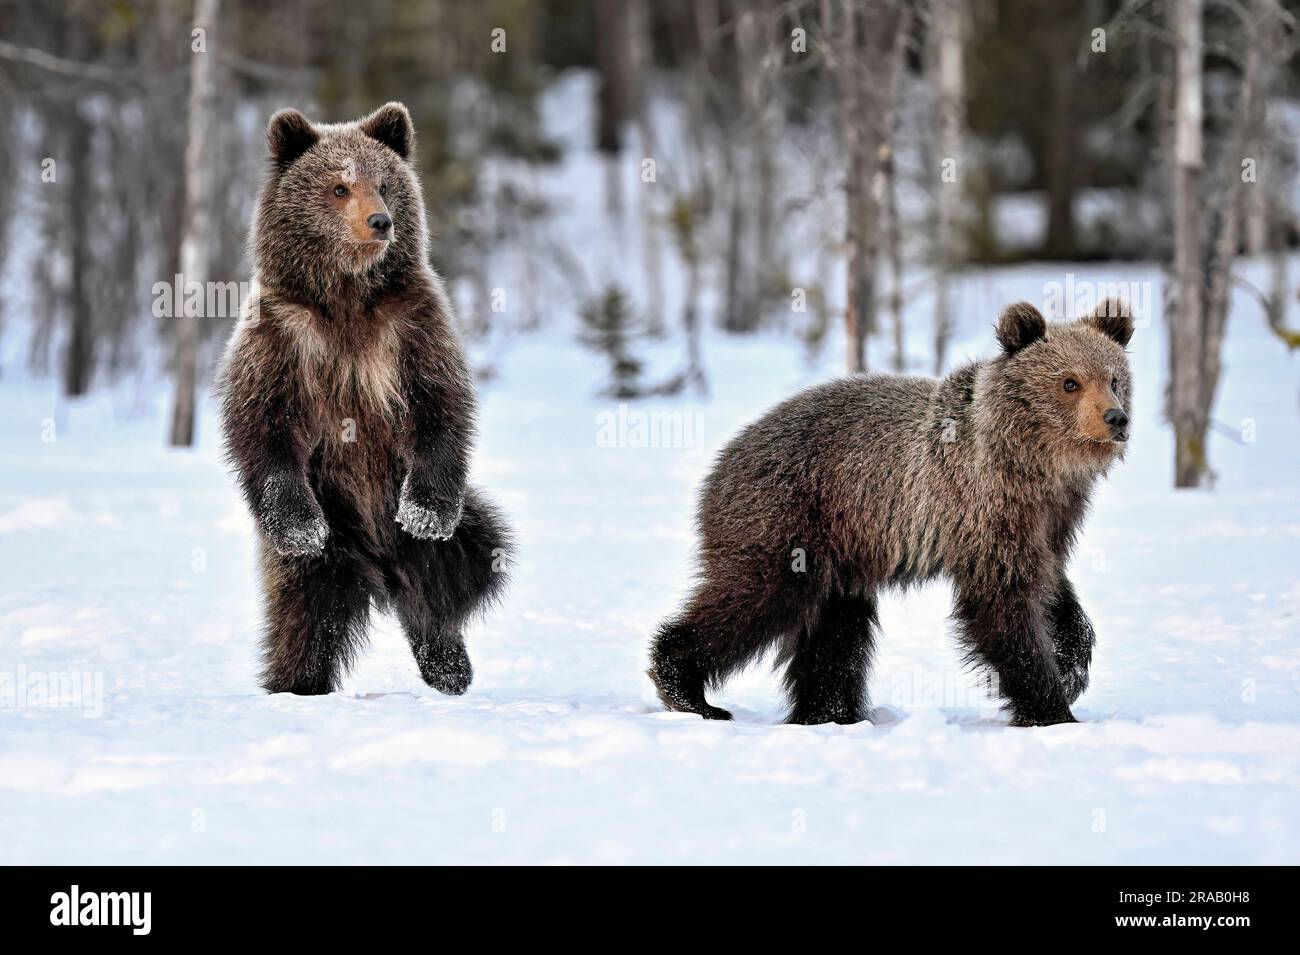 Bärenjungen stehen und beobachten den Schnee Stockfoto